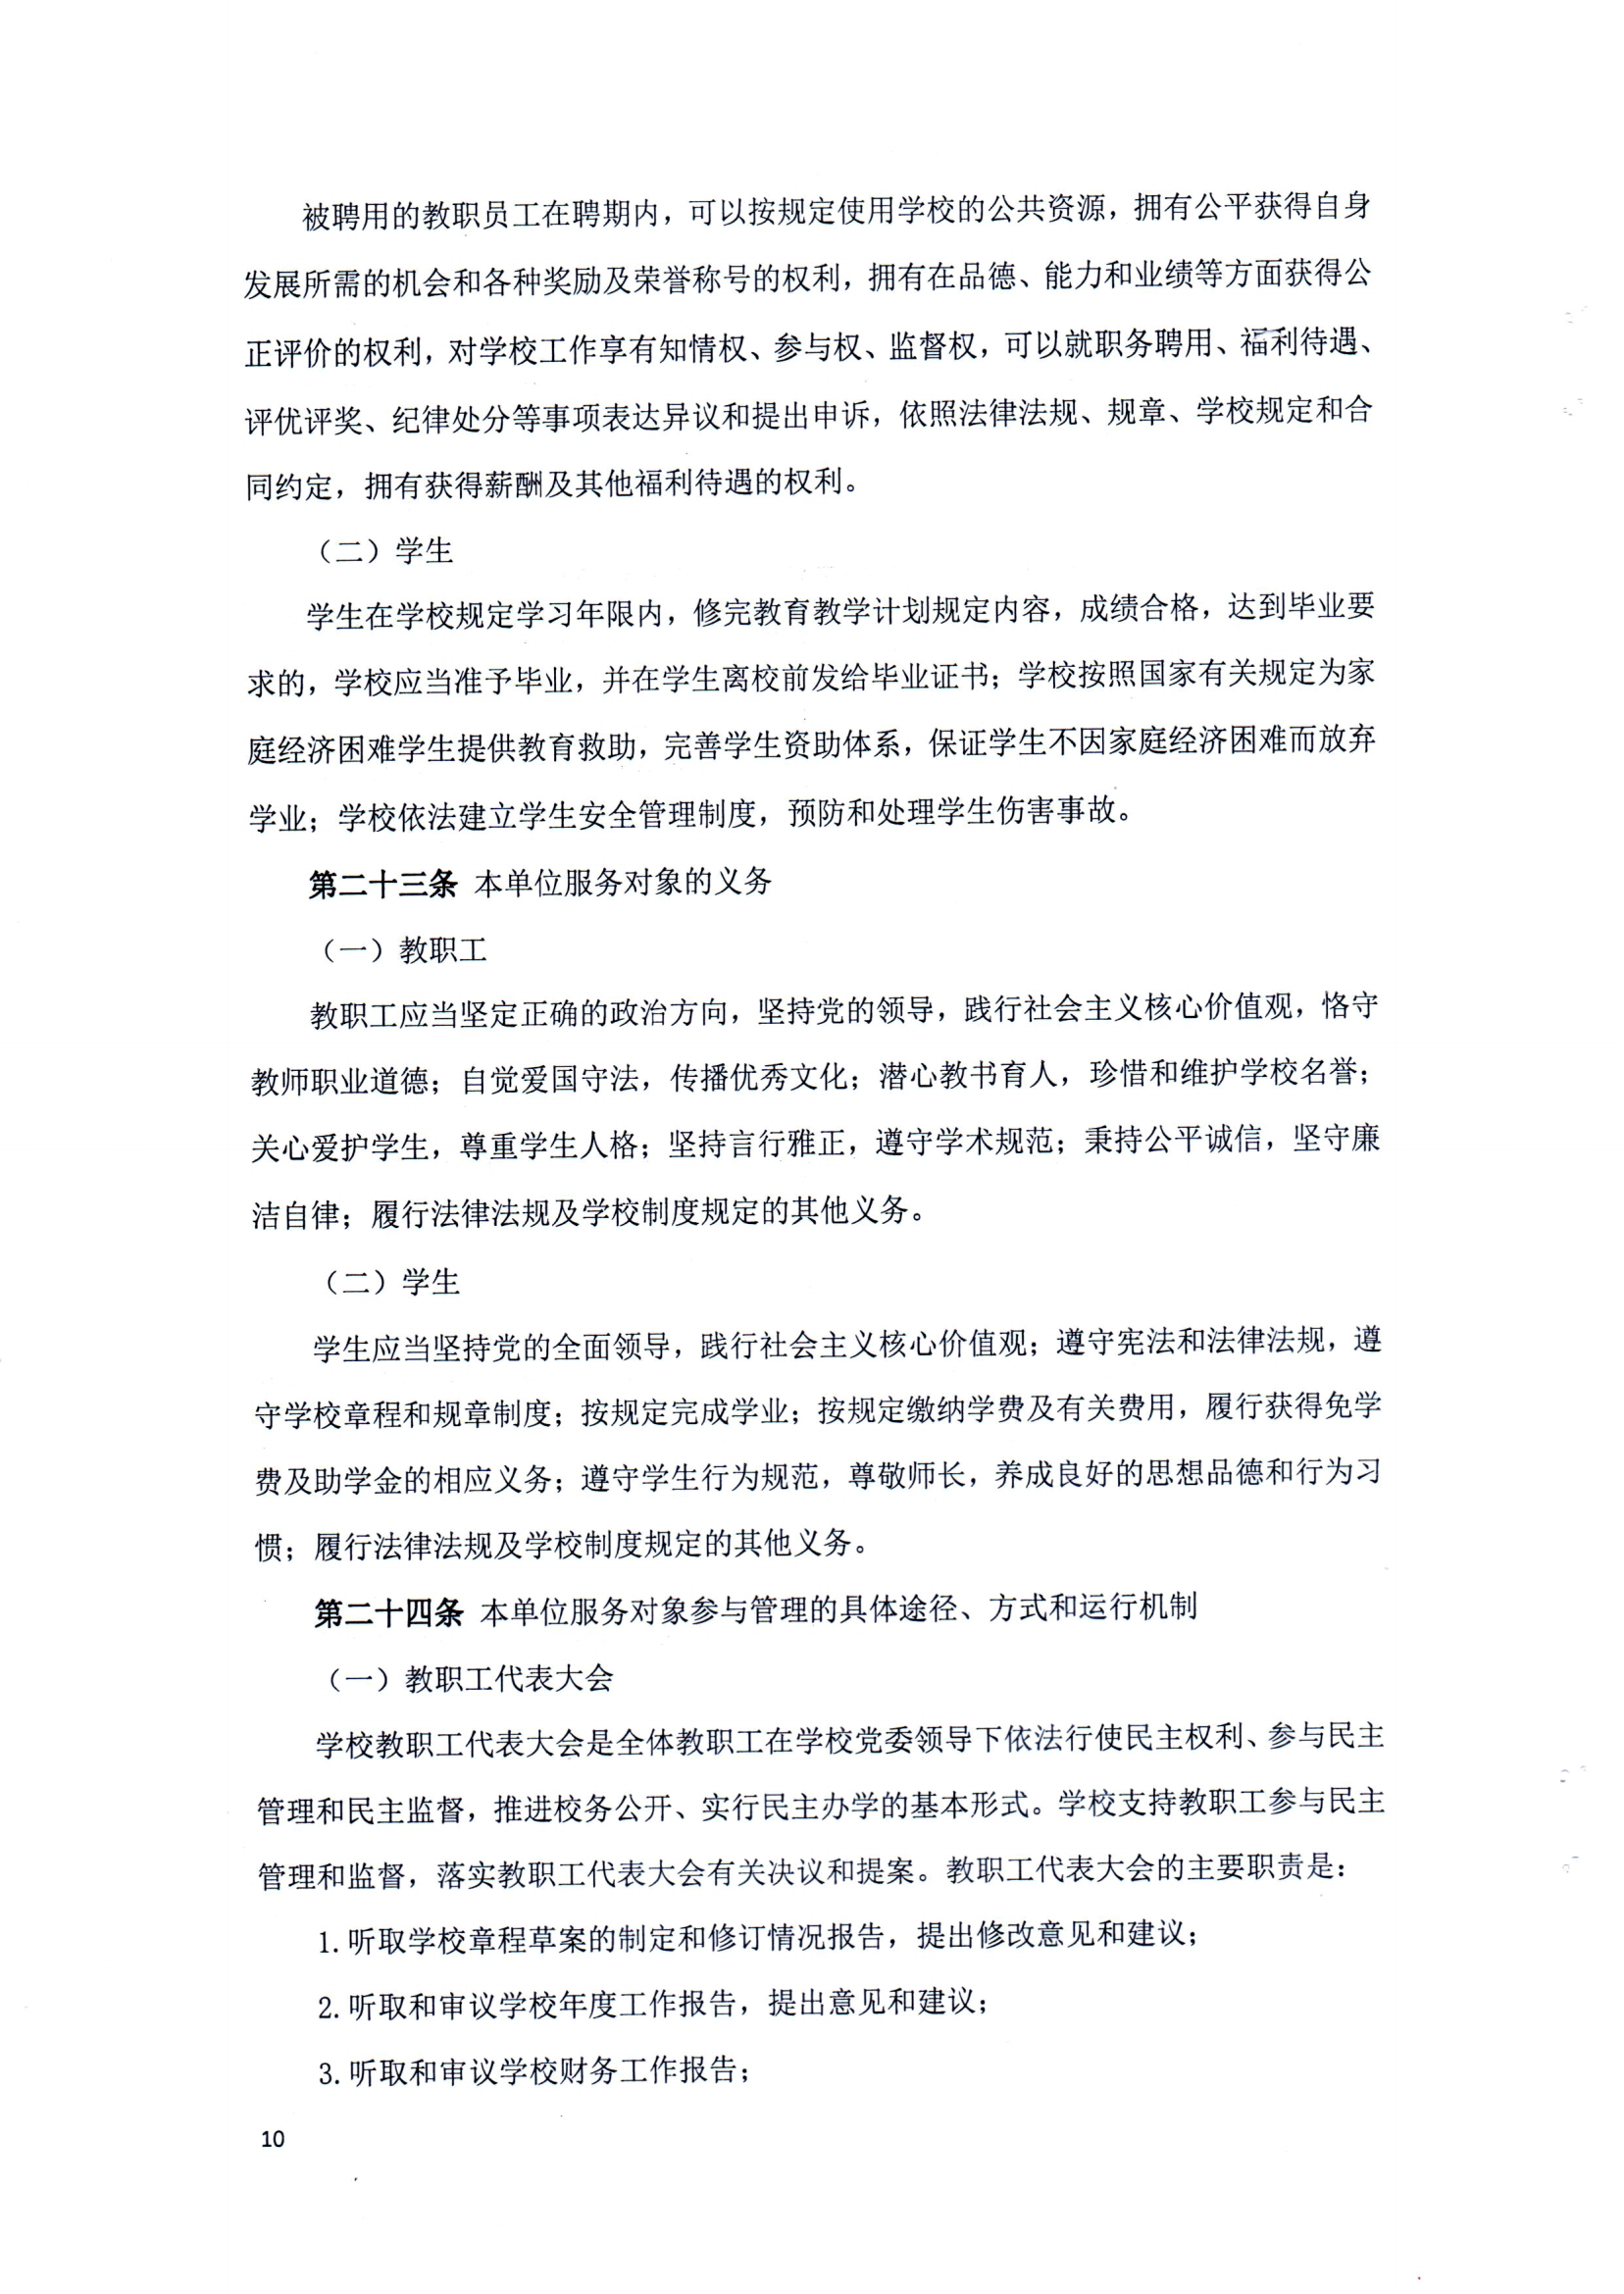 （中国）有限公司官网章程（修正案）_09.png